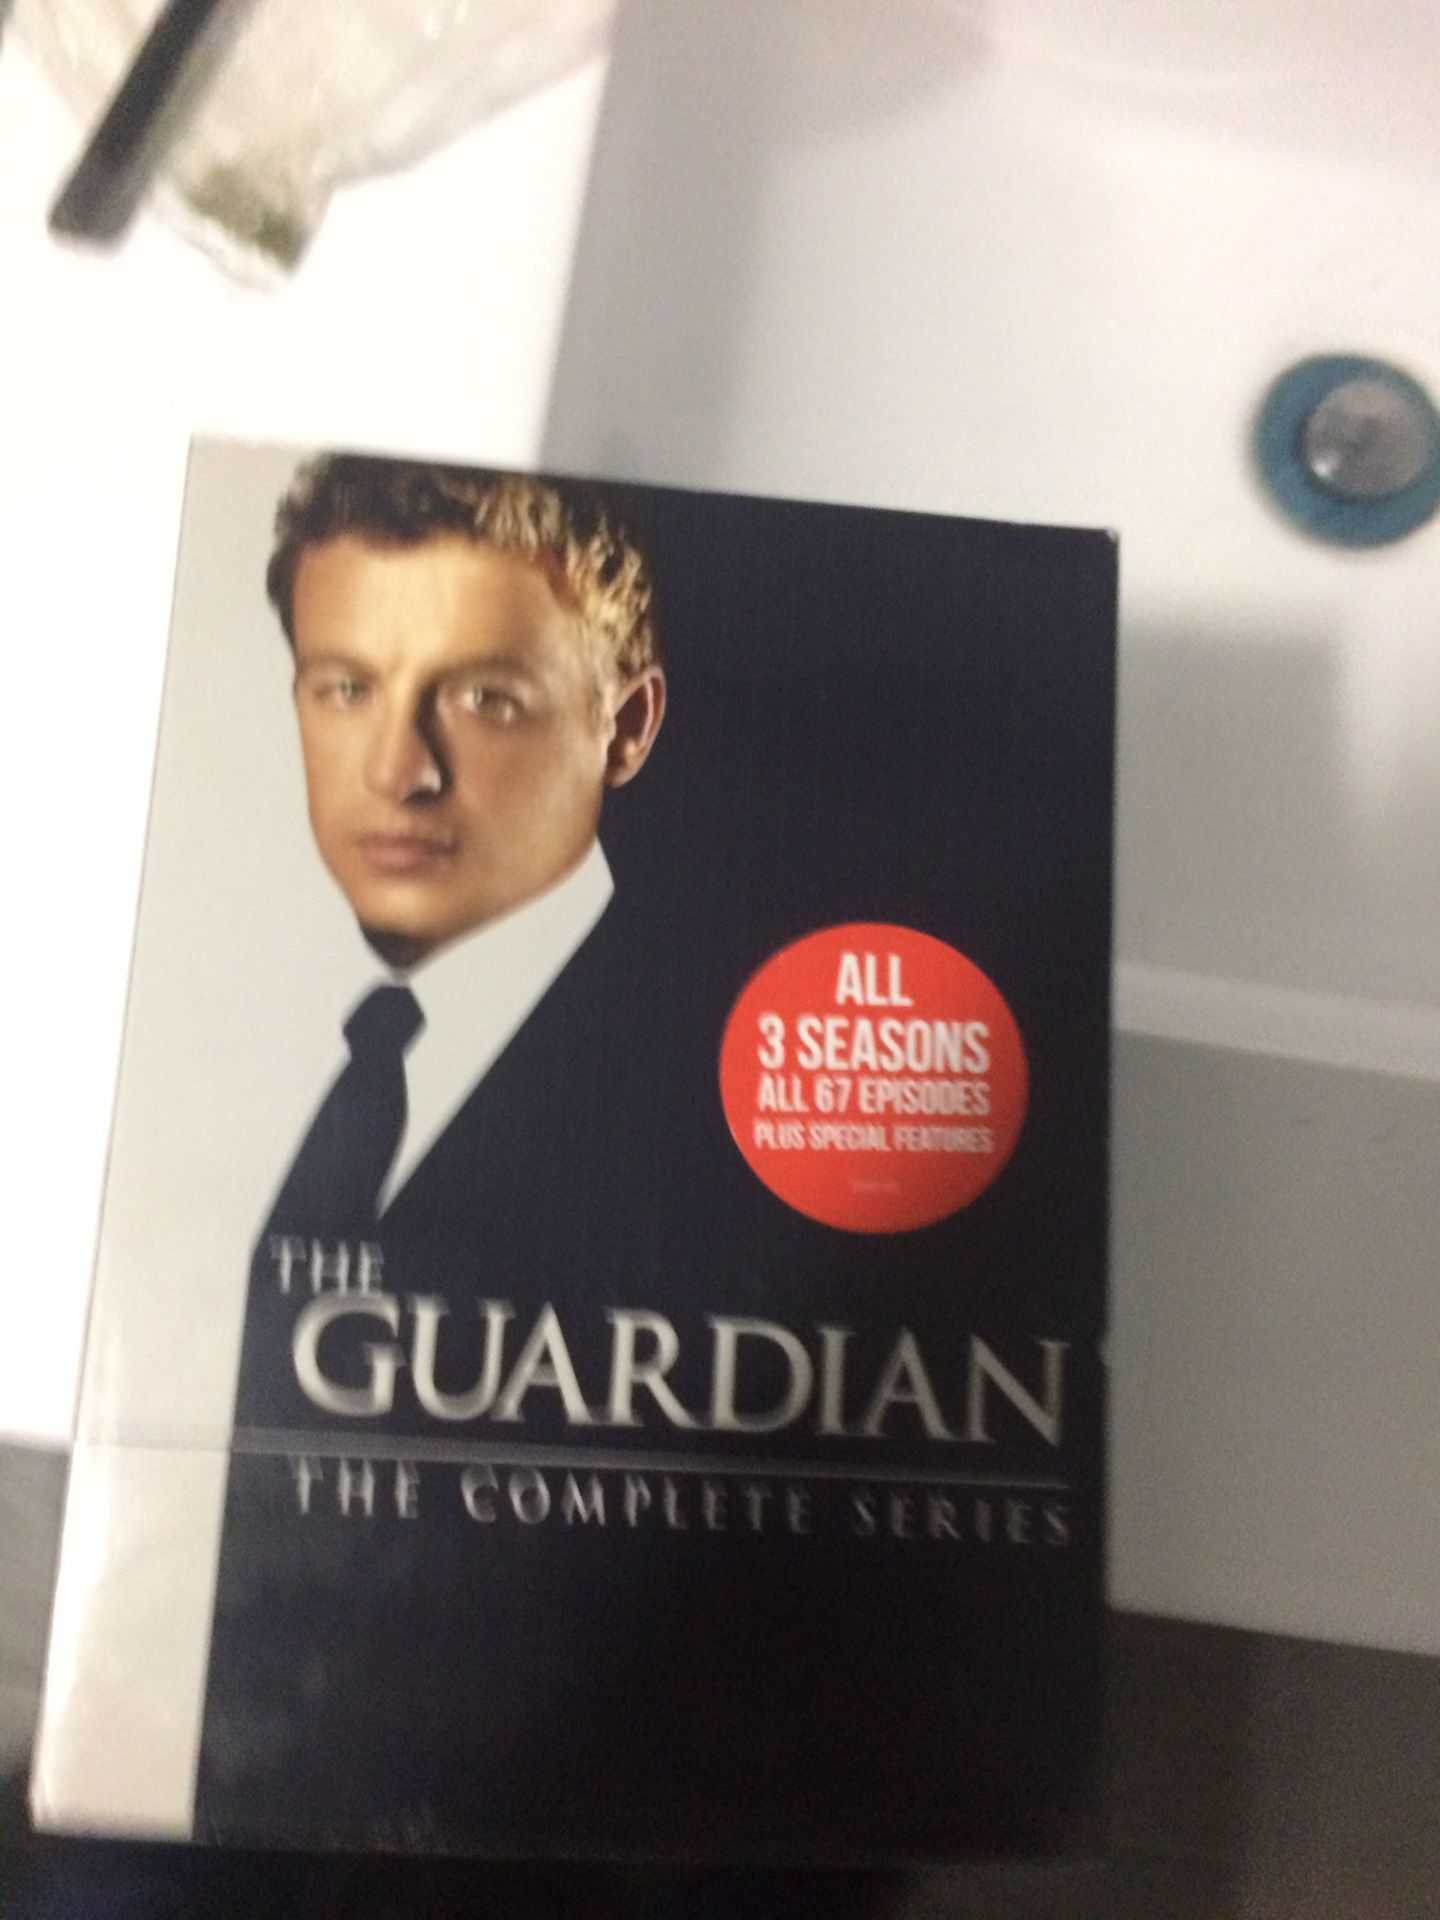 The Guardian dvd full 3 seasons